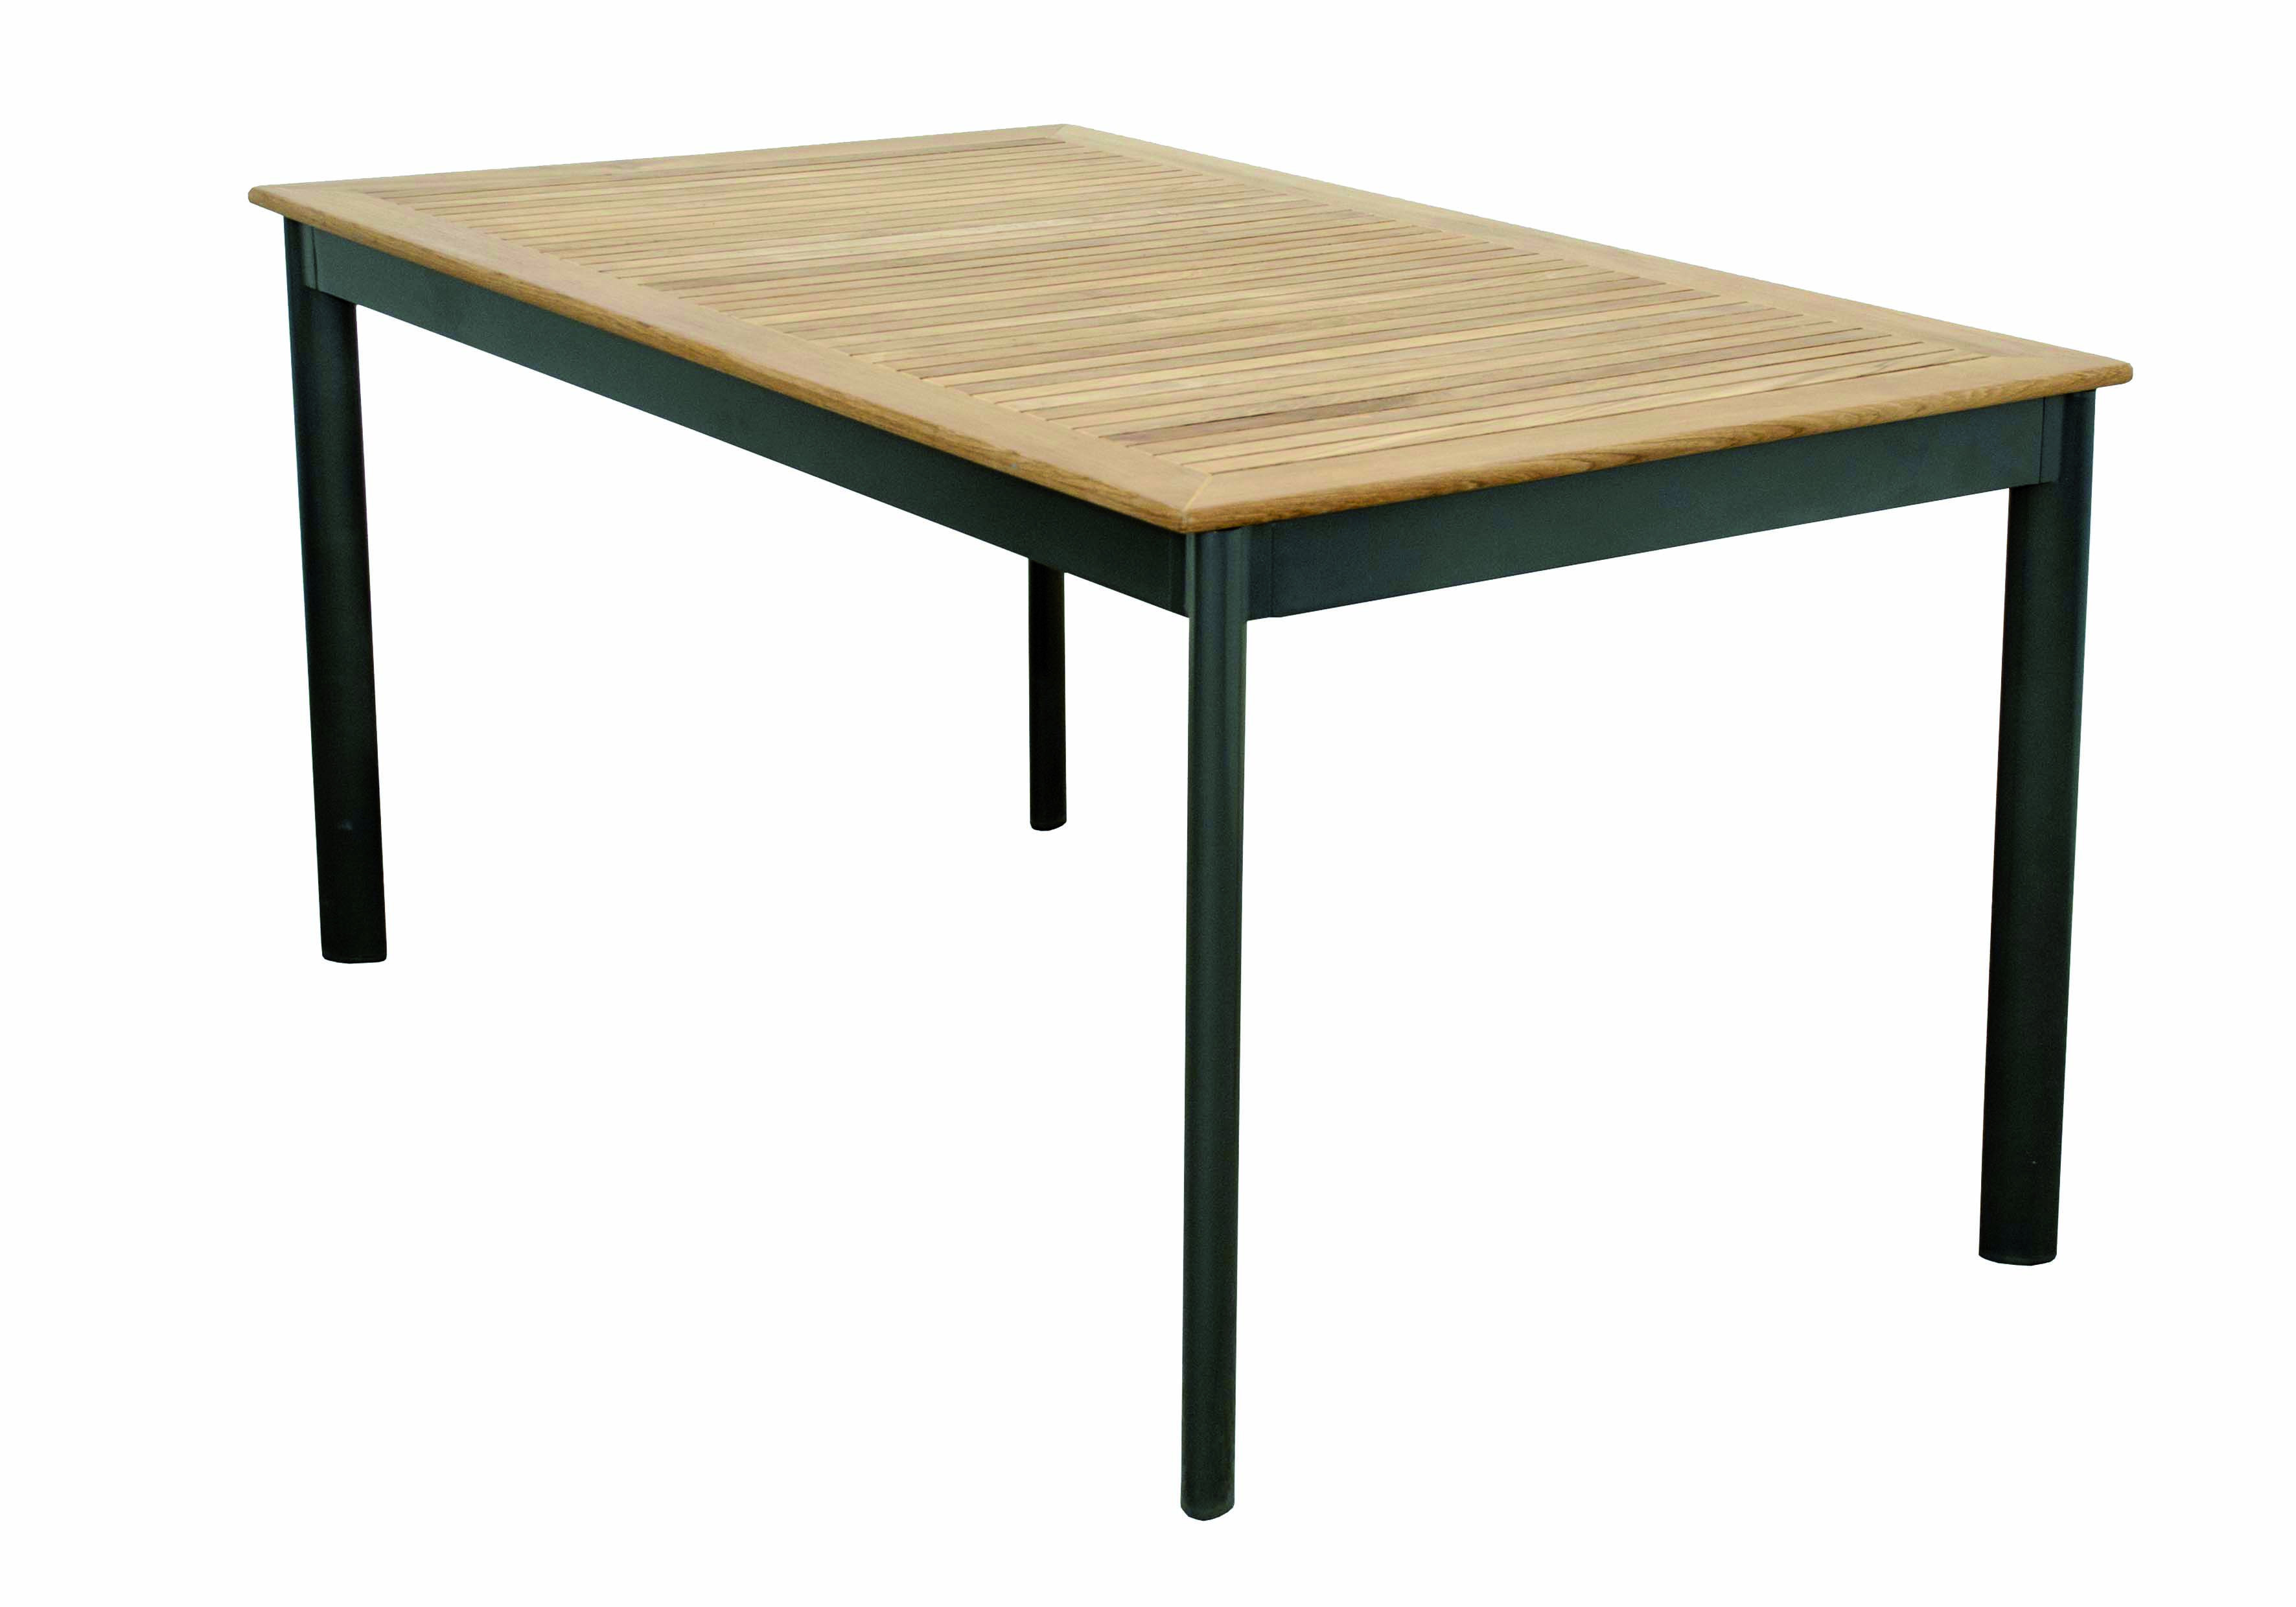 CONCEPT FSC(R) - stůl s teakovou deskou 150 x 90 x 75 cm